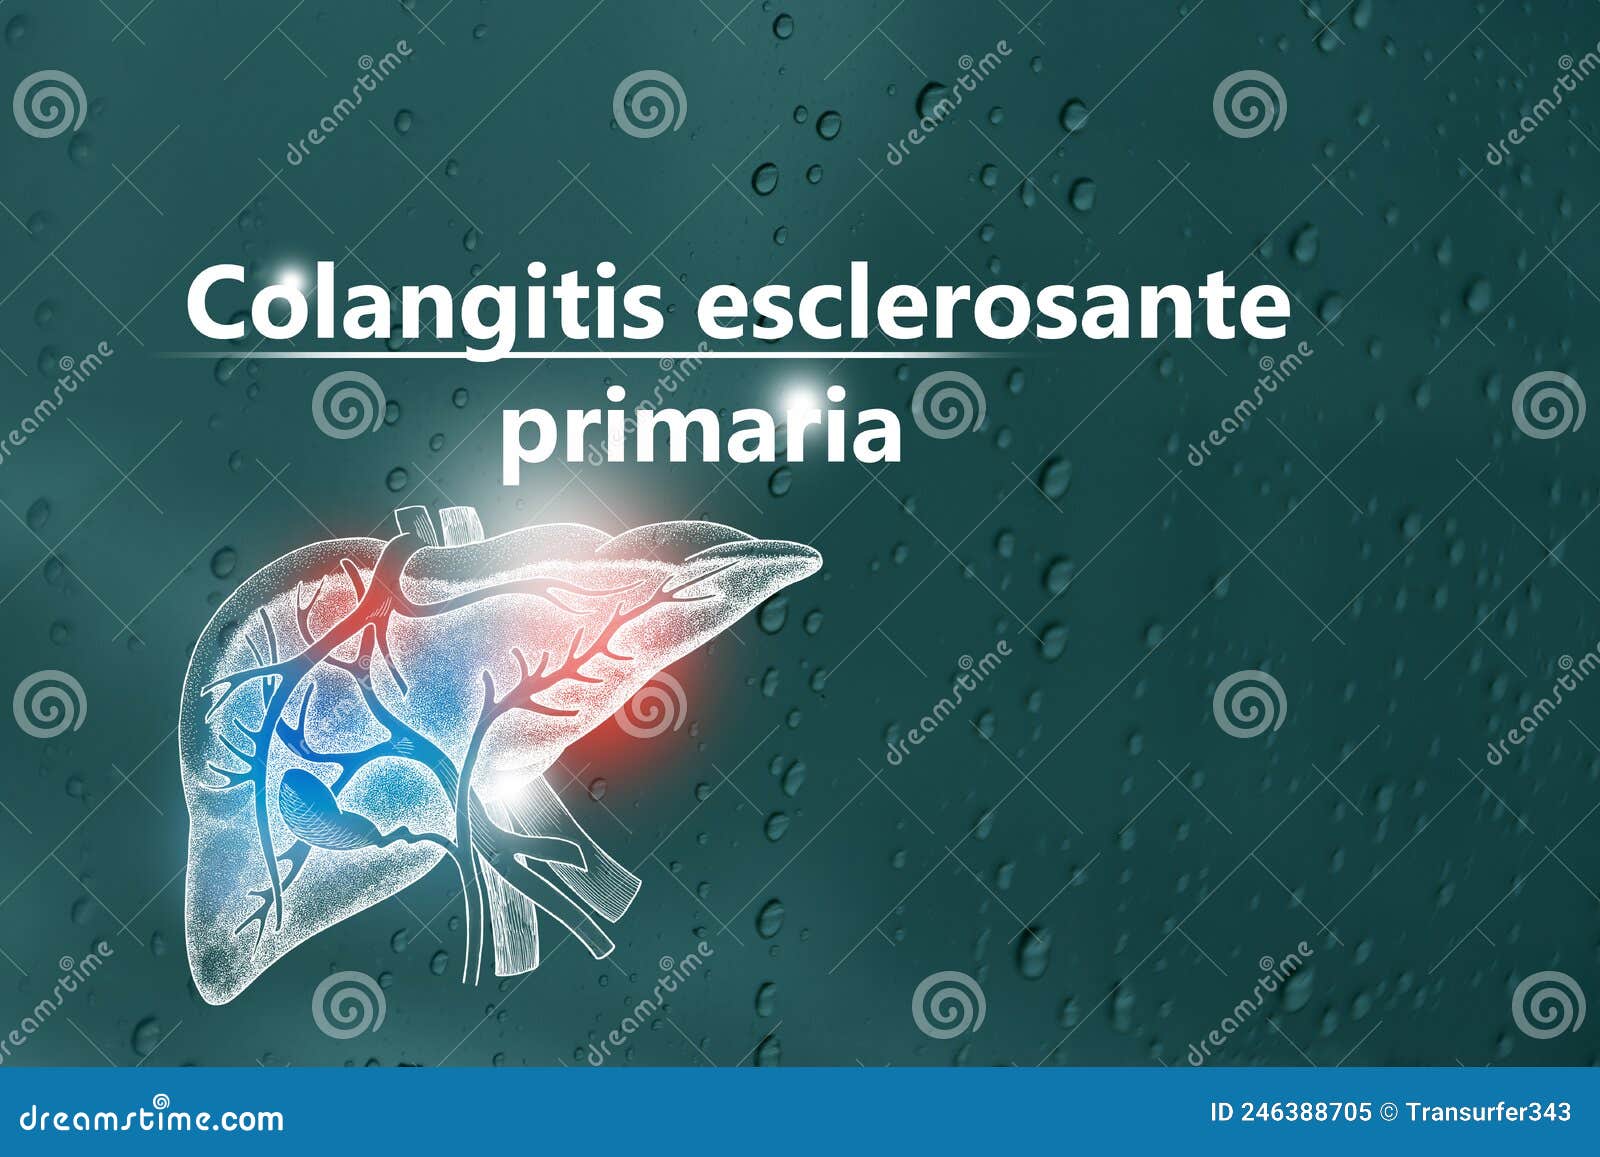 colangitis esclerosante primaria - diagnÃÂ³stico y tratamiento, lista de comprobaciÃÂ³n mÃÂ©dica. fondo texturizado y espacio de